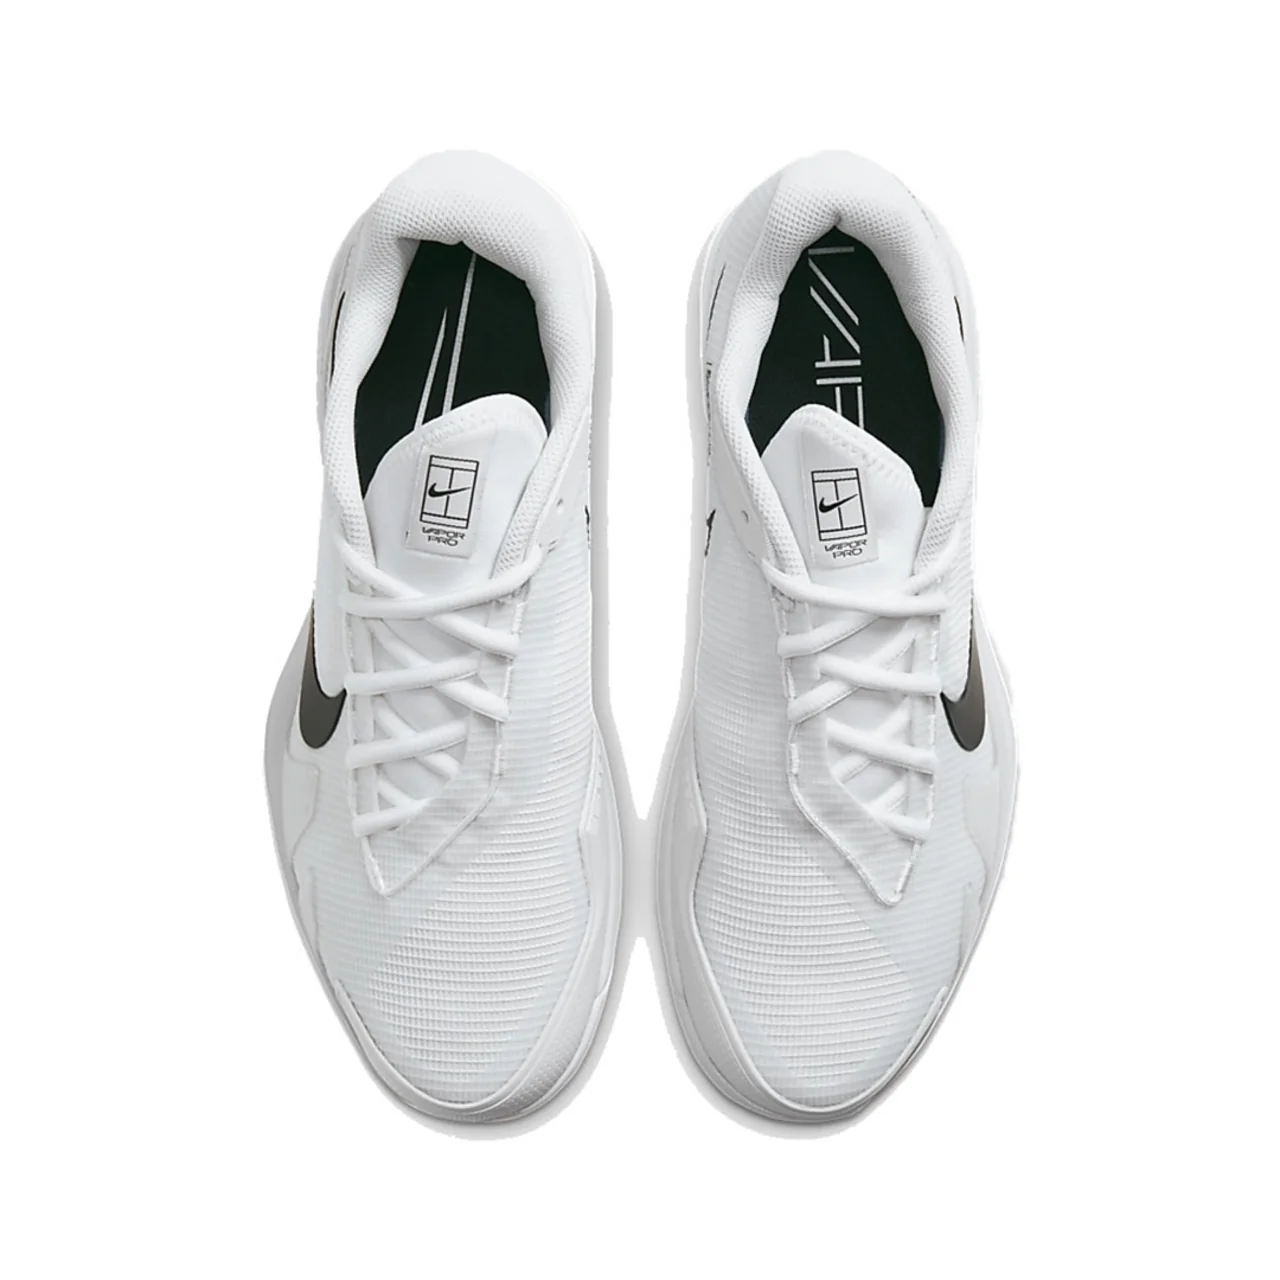 Nike Vapor Pro White/Black